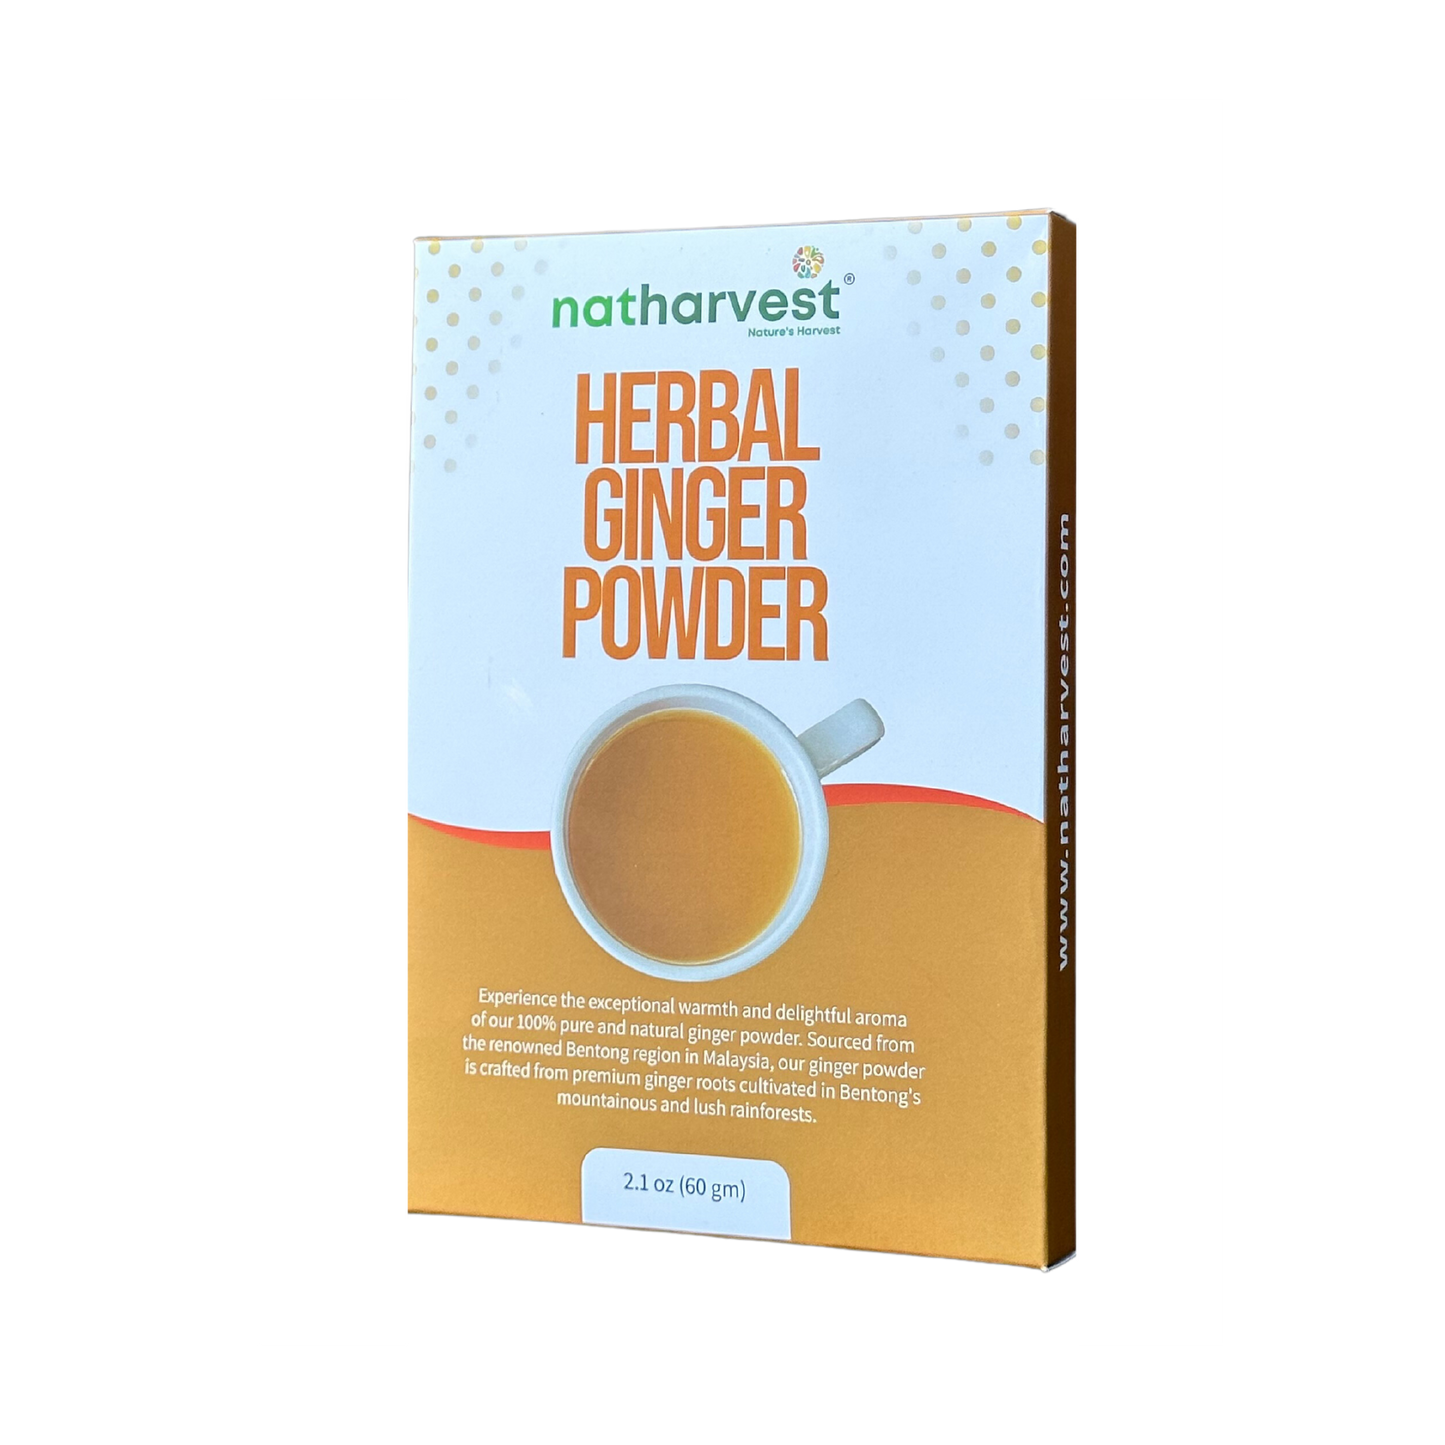 Natharvest Herbal Ginger Powder, 2.1 oz (60 gm)